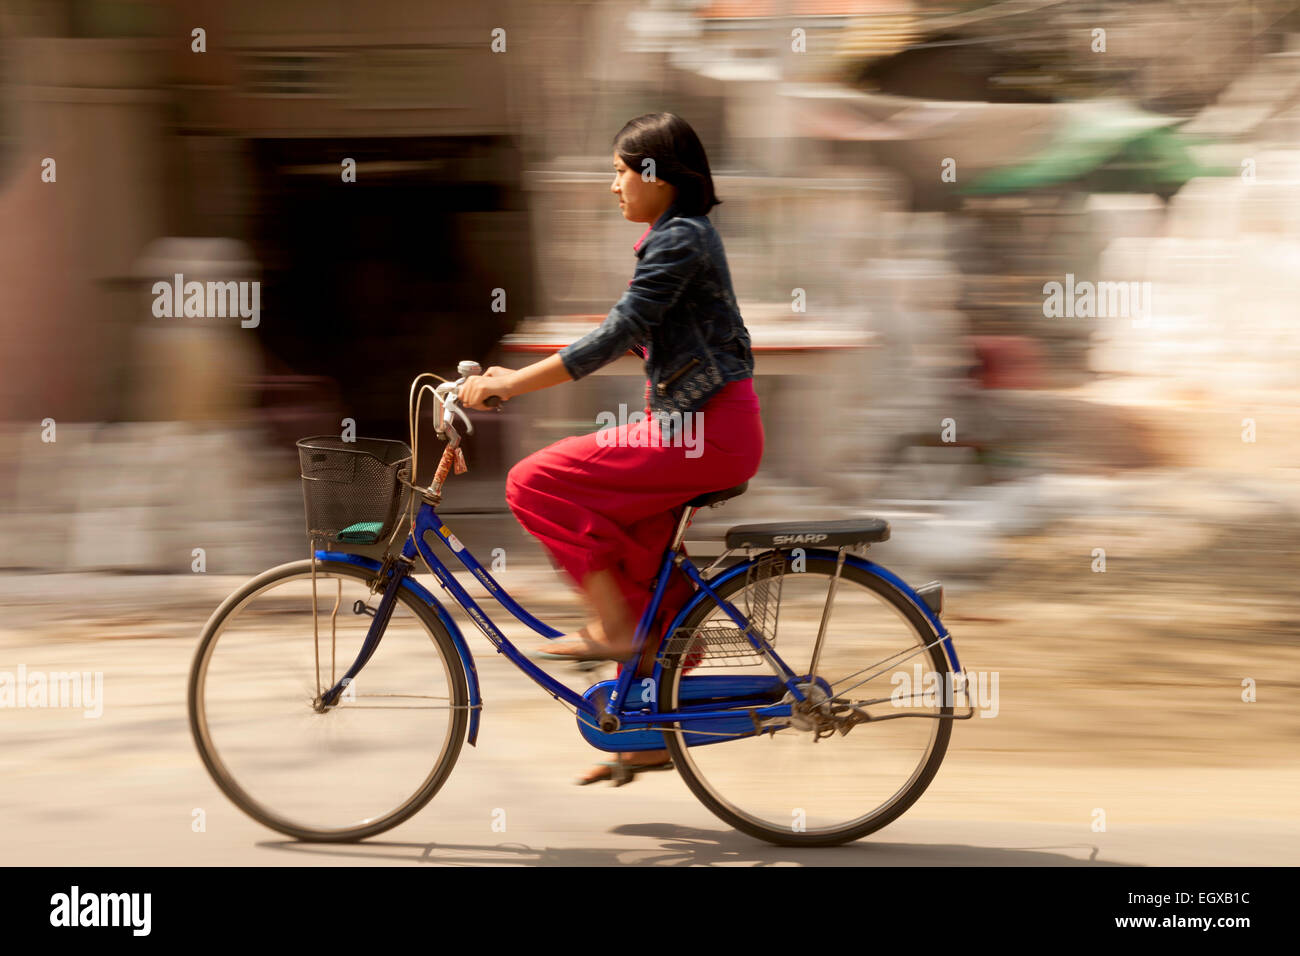 Donna birmano in sella ad una bicicletta, Mandalay Myanmar ( Birmania ), Asia Foto Stock